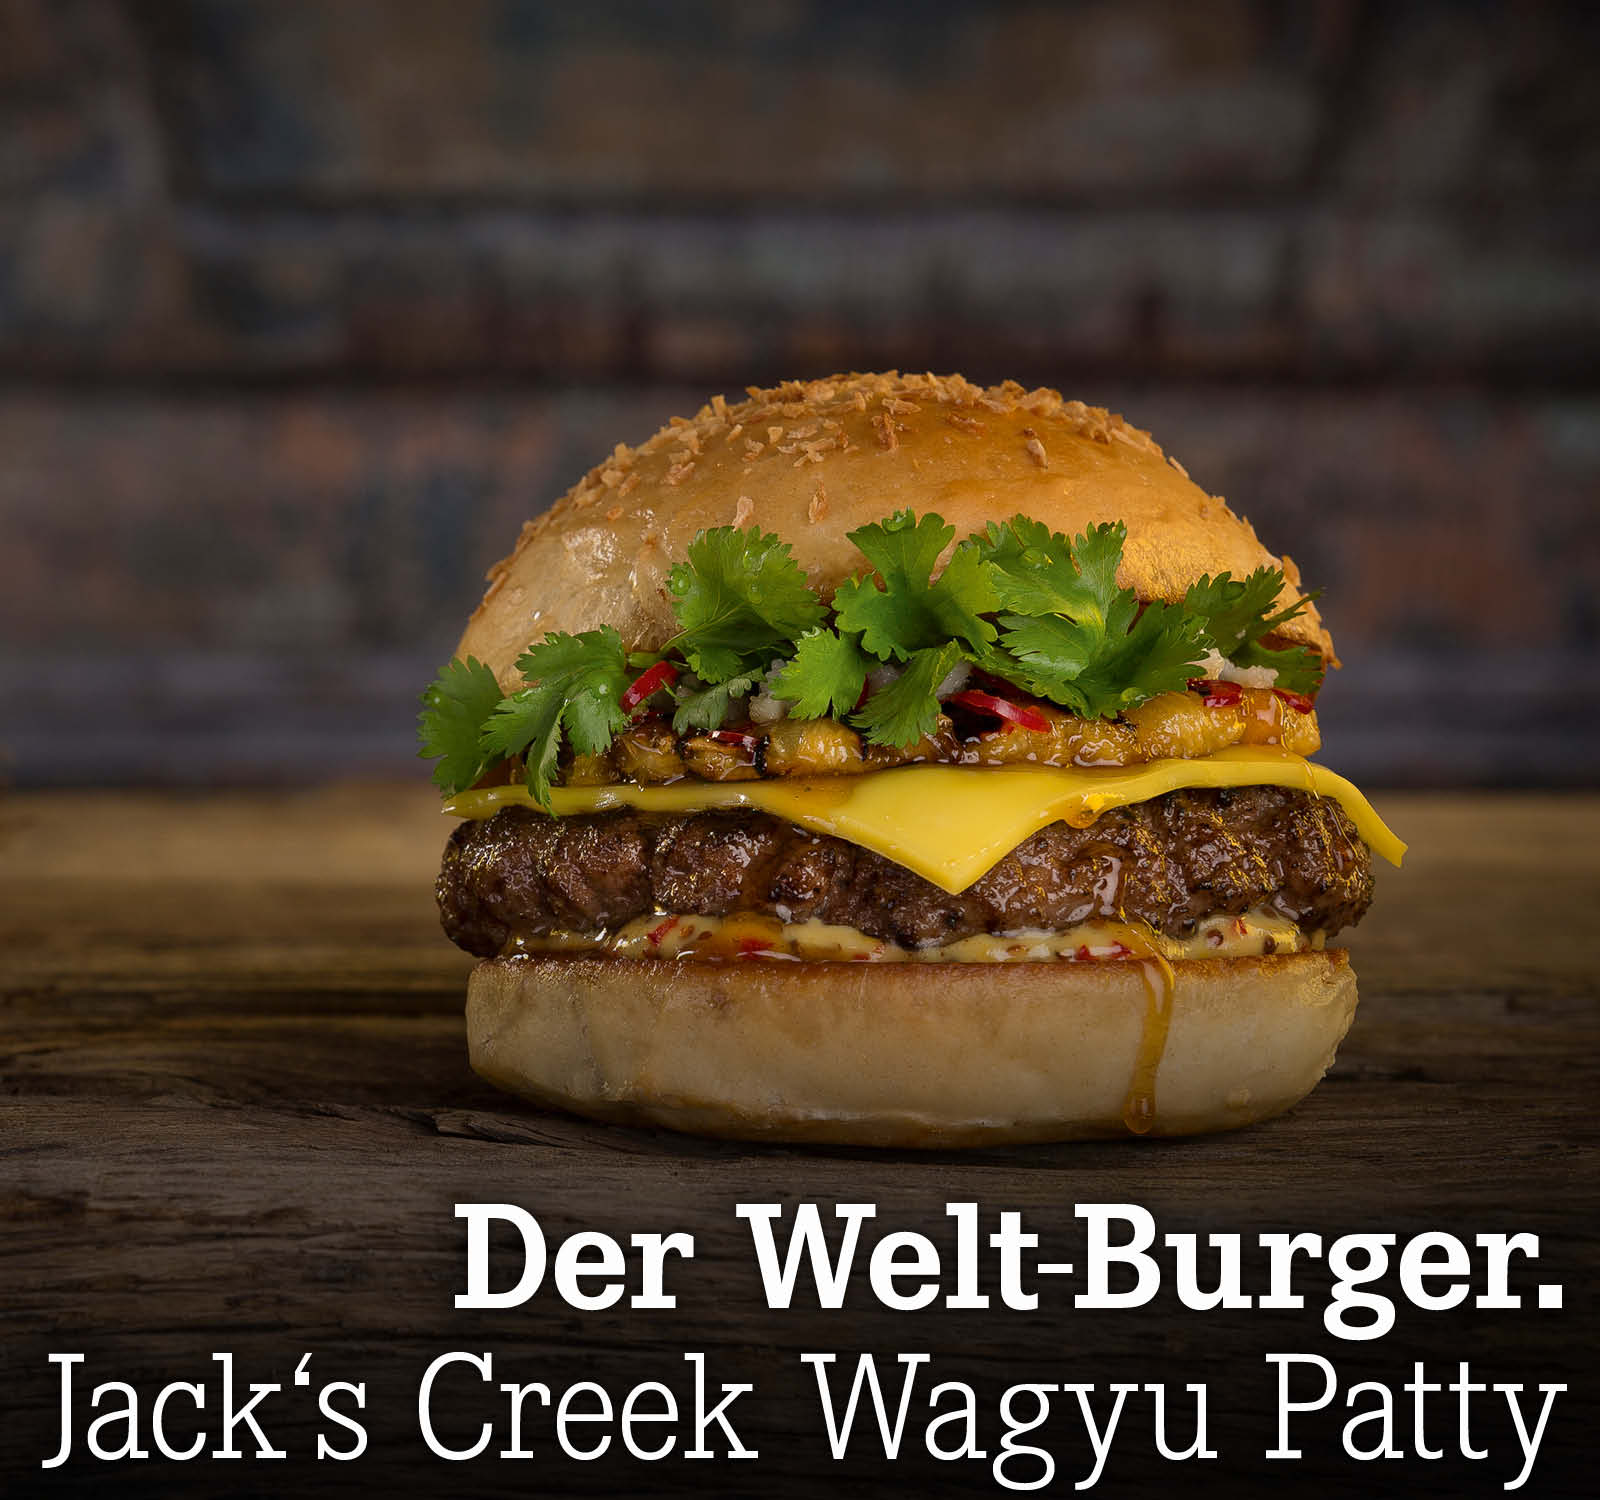 Der Welt-Burger. Jack’s Creek Wagyu Patty